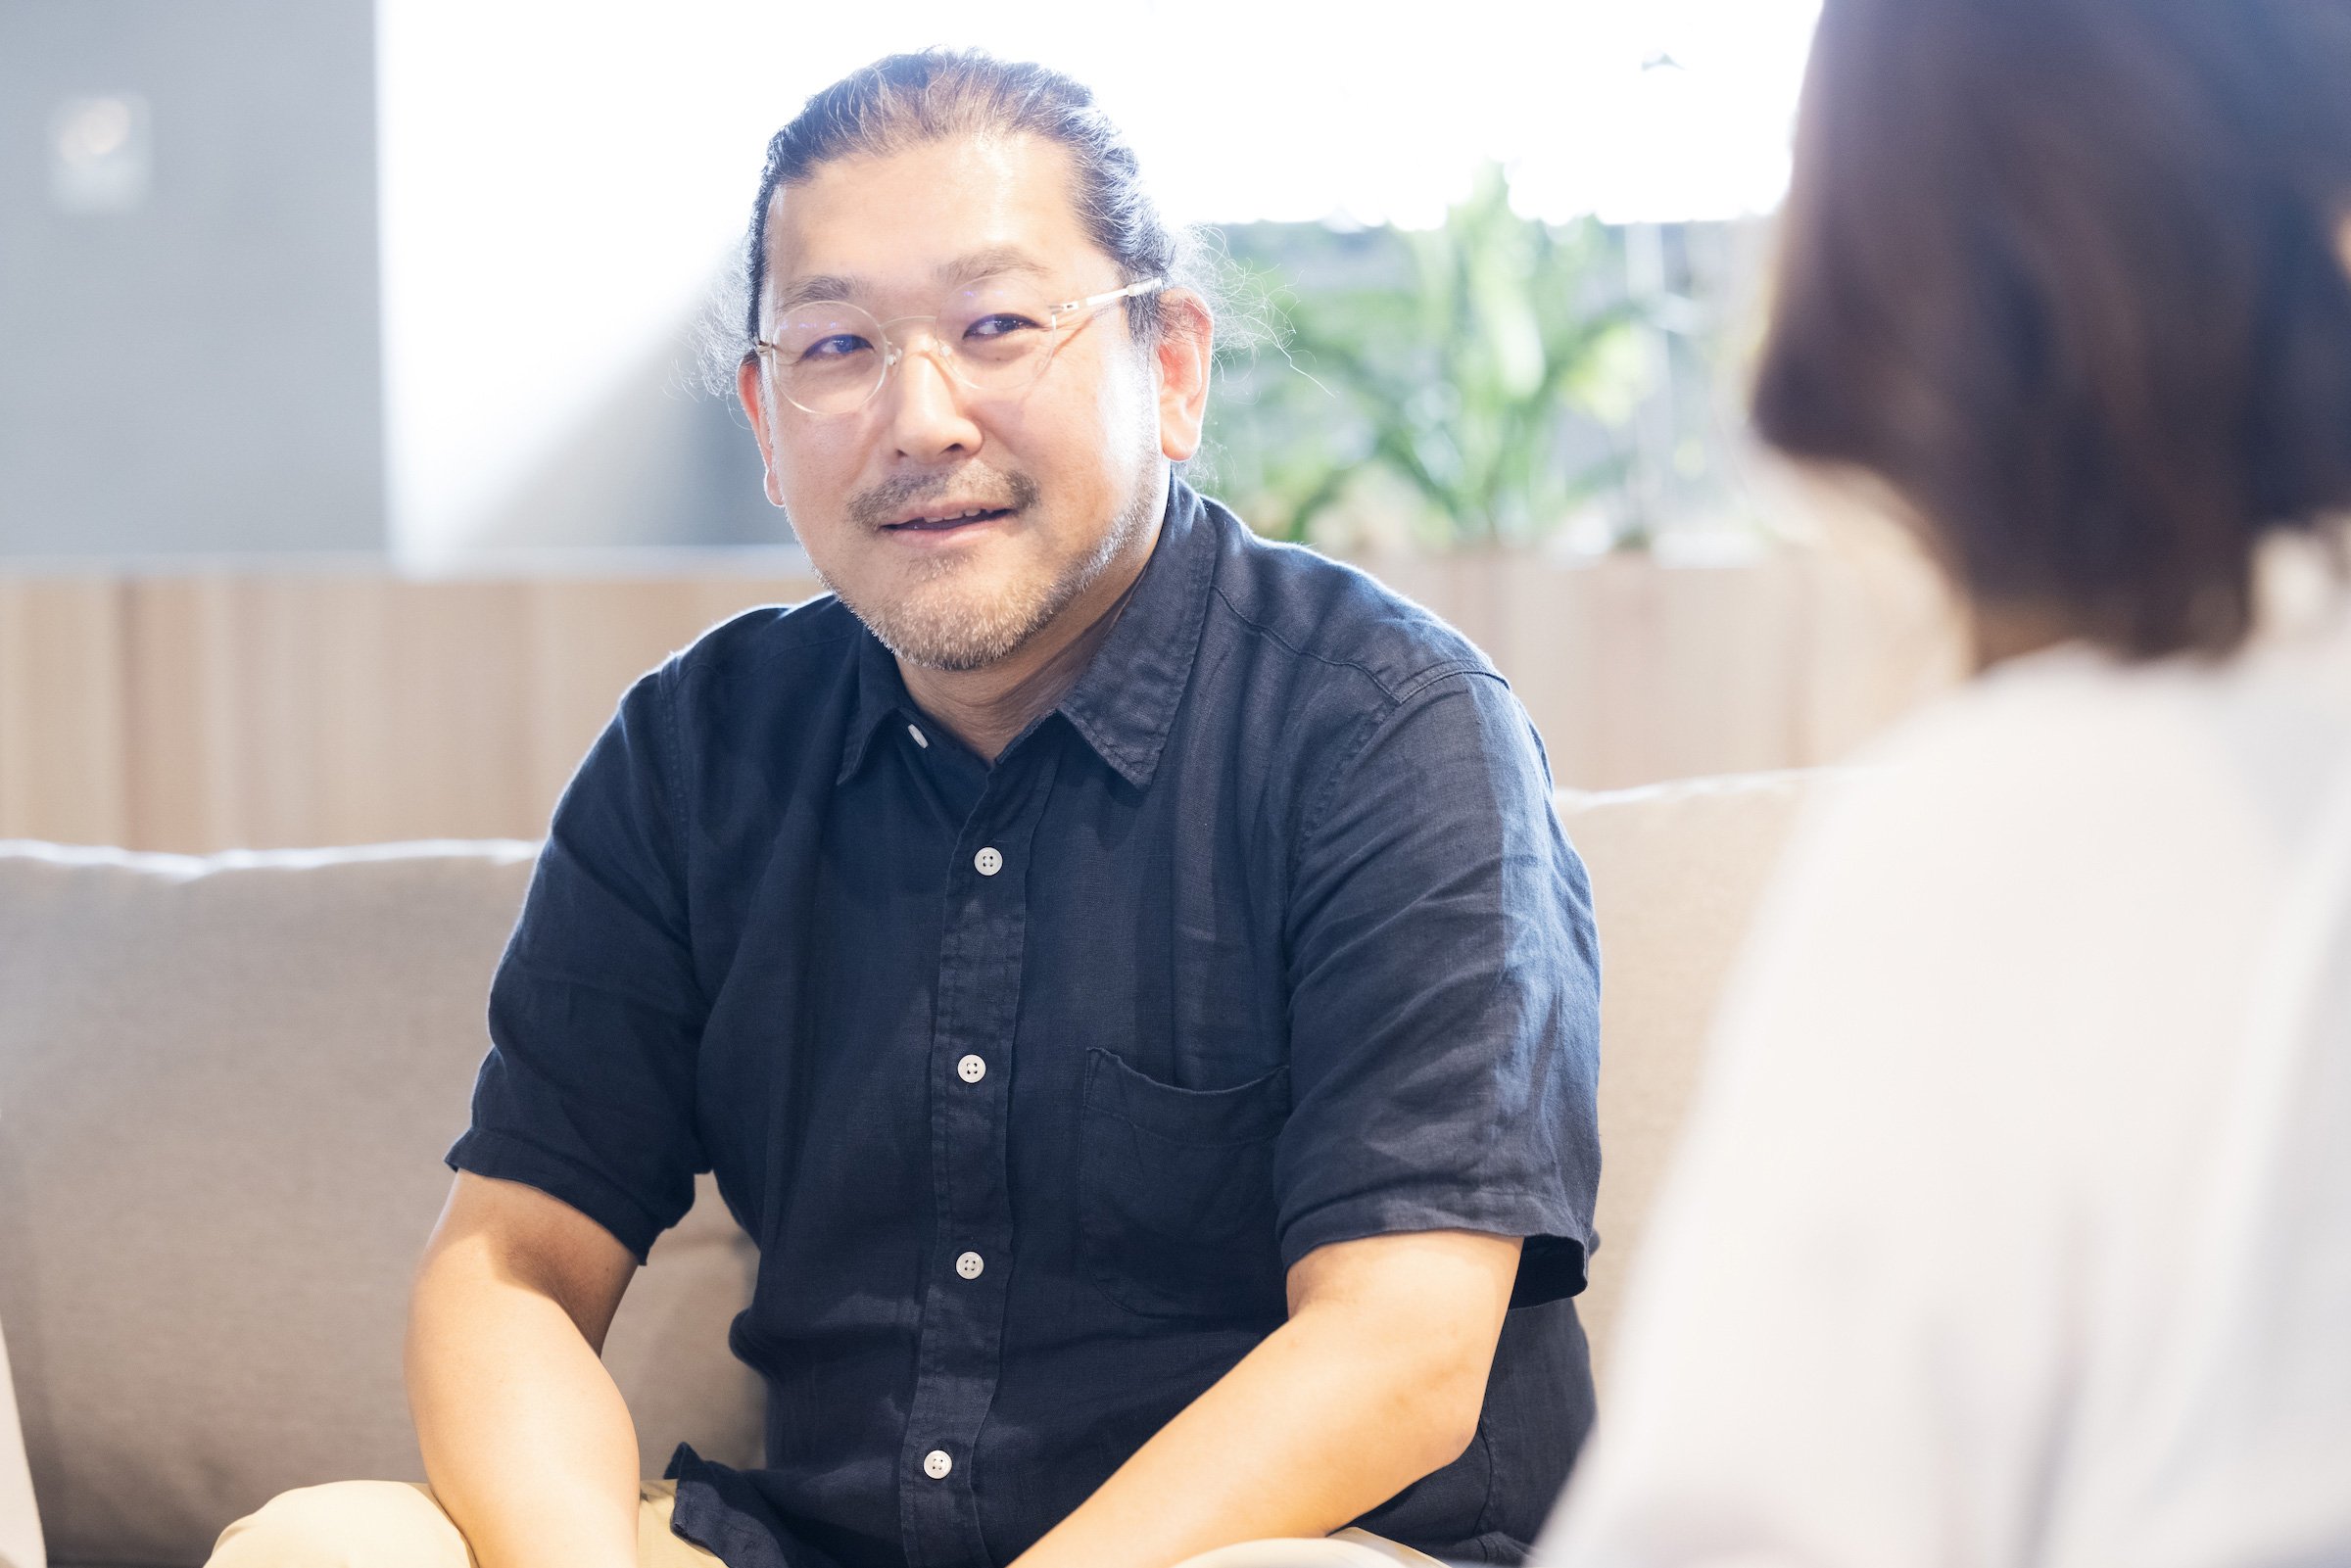 「コデカケ」のビジネスやビジョン検討を担当する松田 淳一氏  | Make New Magazine「未来の定番」をつくるために、パナソニックのリアルな姿を伝えるメディア